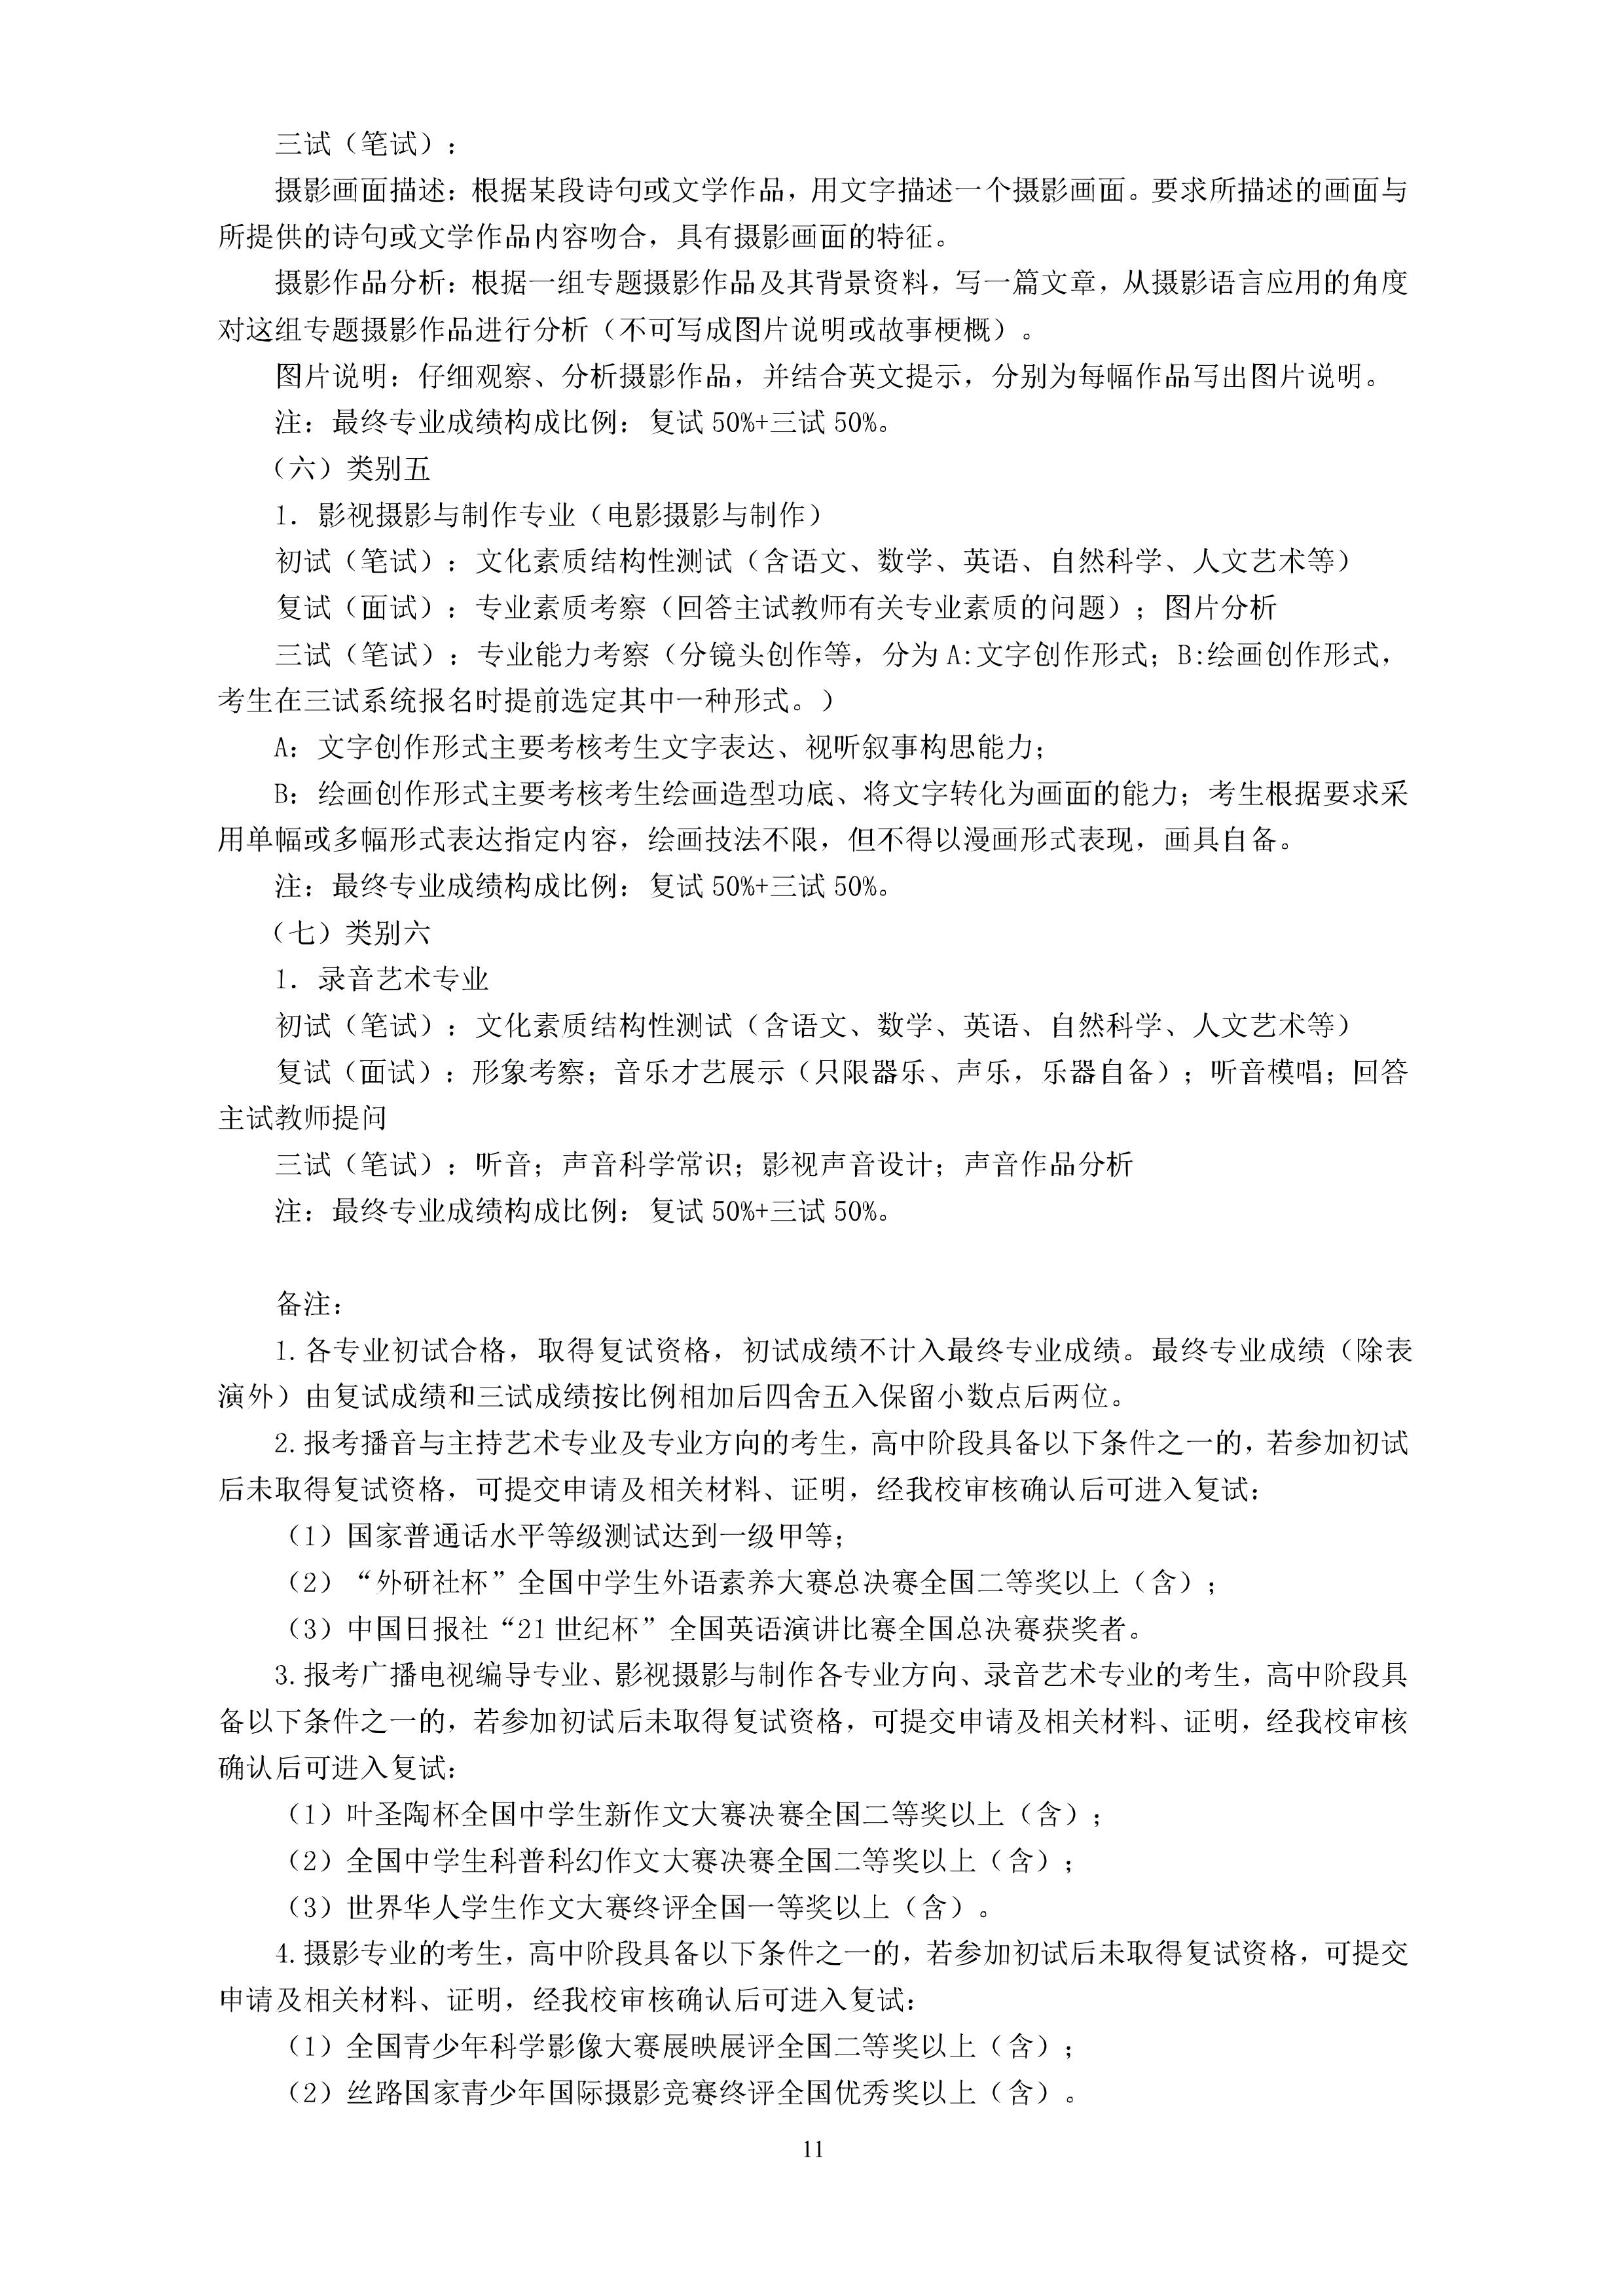 11浙江传媒学院2020年招生简章-浙江传媒学院招生网.jpg